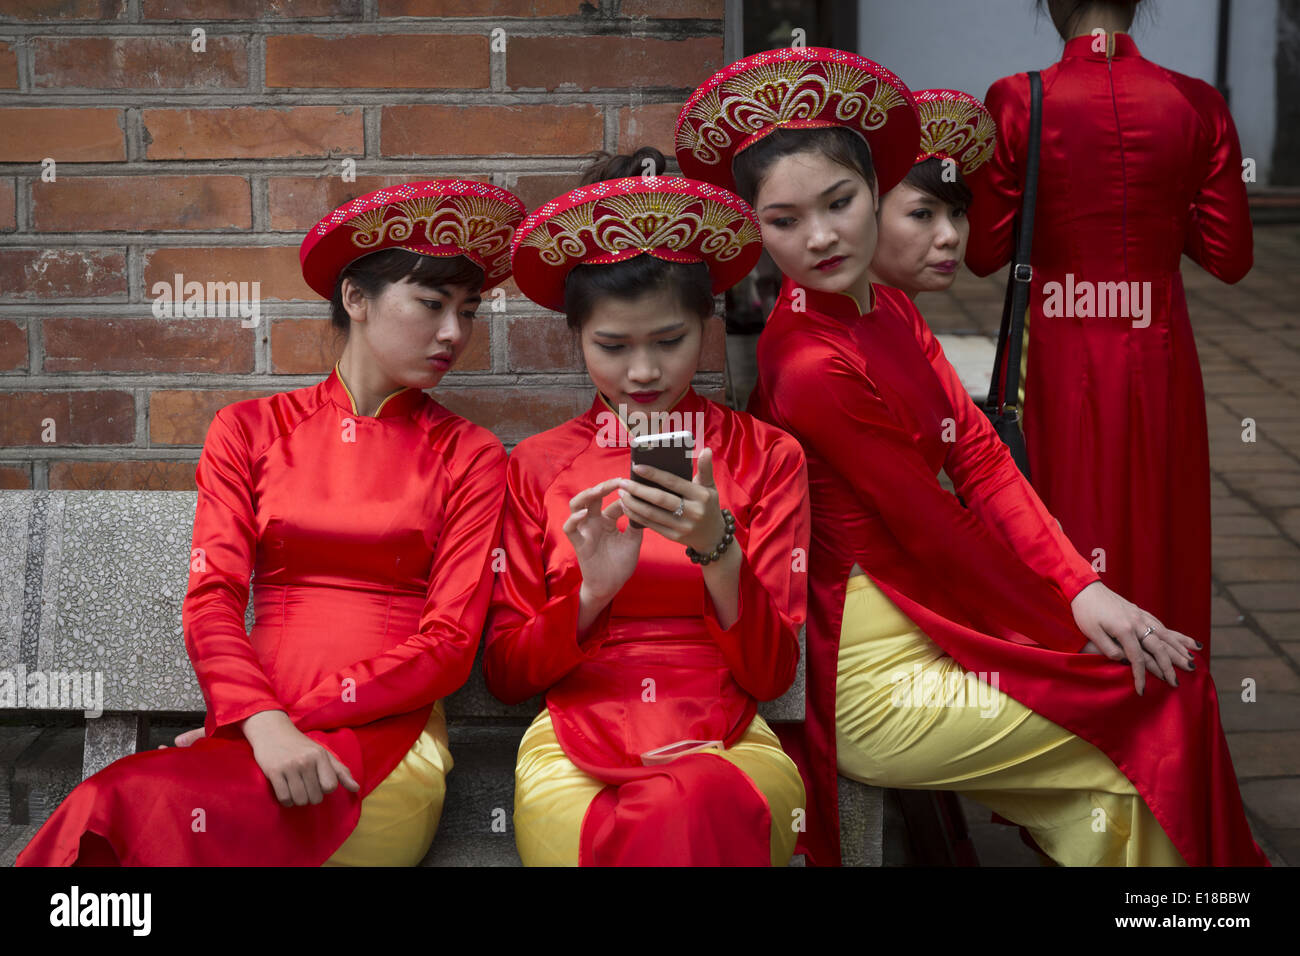 Un grupo de mujeres vestidas en trajes tradicionales, mirando el teléfono de uno de ellos. Foto de stock